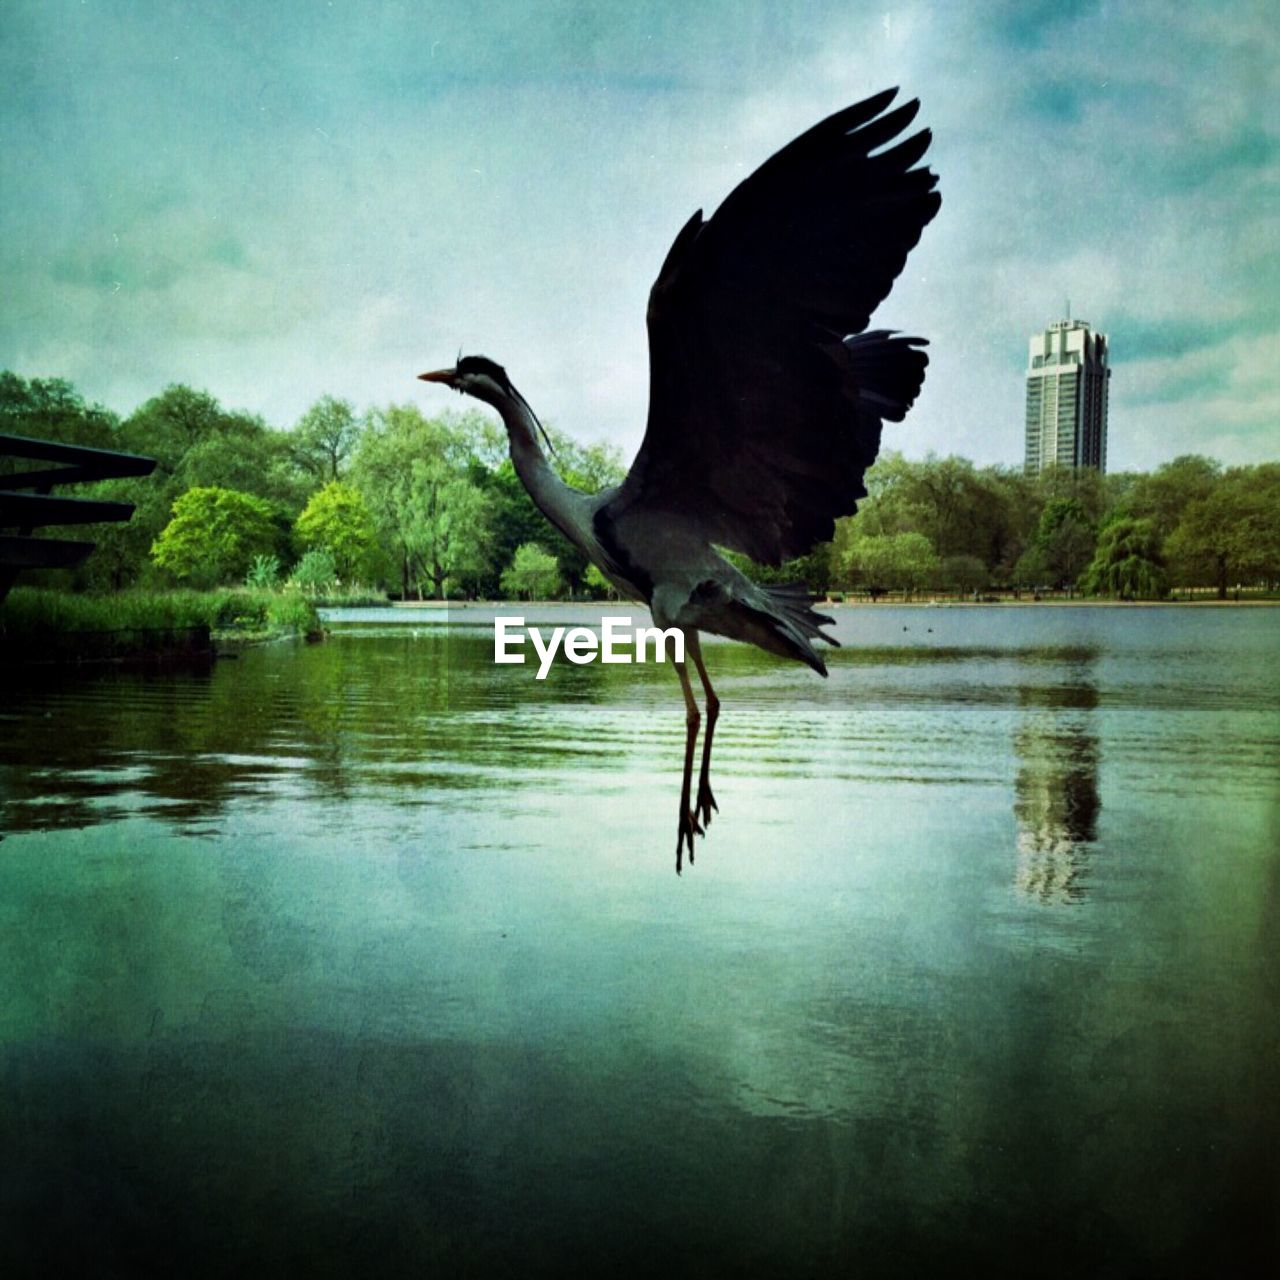 Heron flying over lake